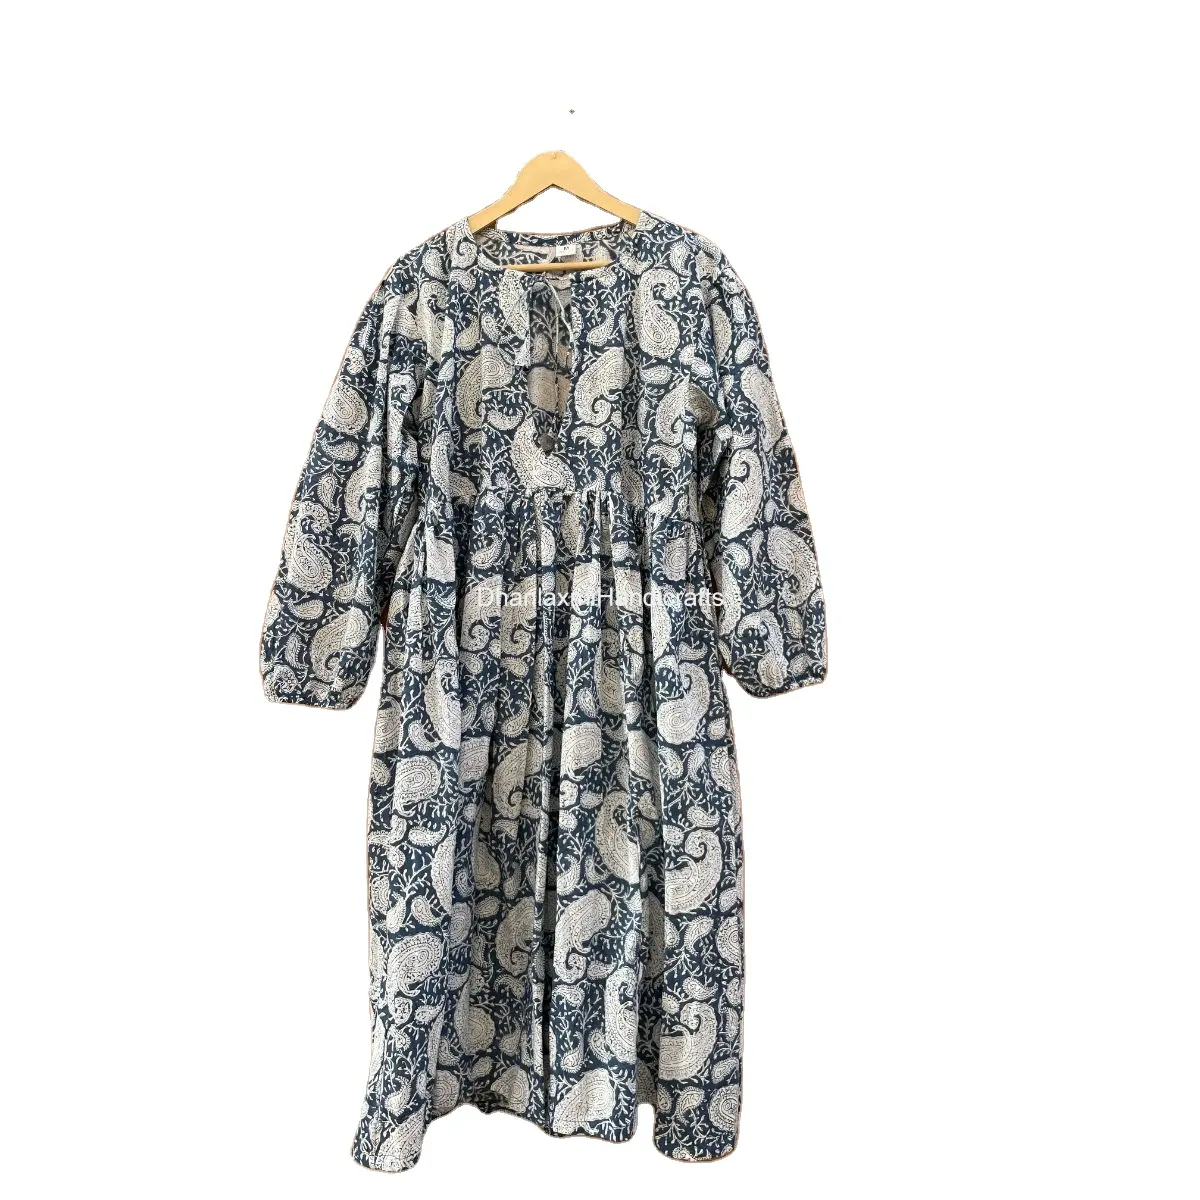 فستان نسائي بوهيمي من القطن للصيف بتصميم مطبوع للبيع بالجملة فستان نسائي هندي للشاطئ